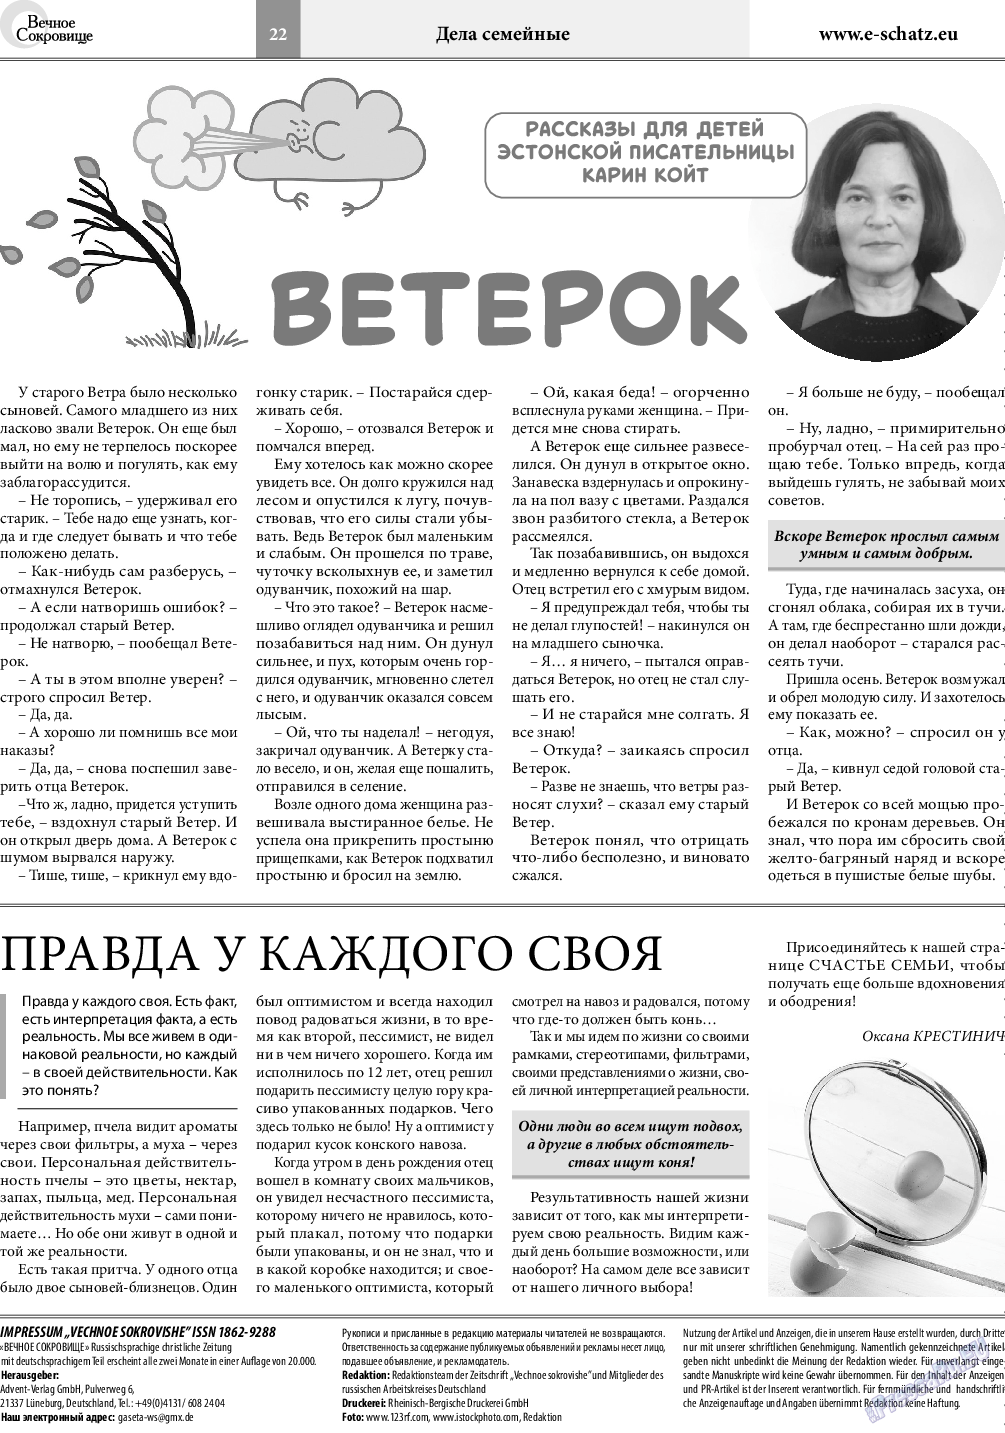 Вечное сокровище, газета. 2020 №3 стр.22